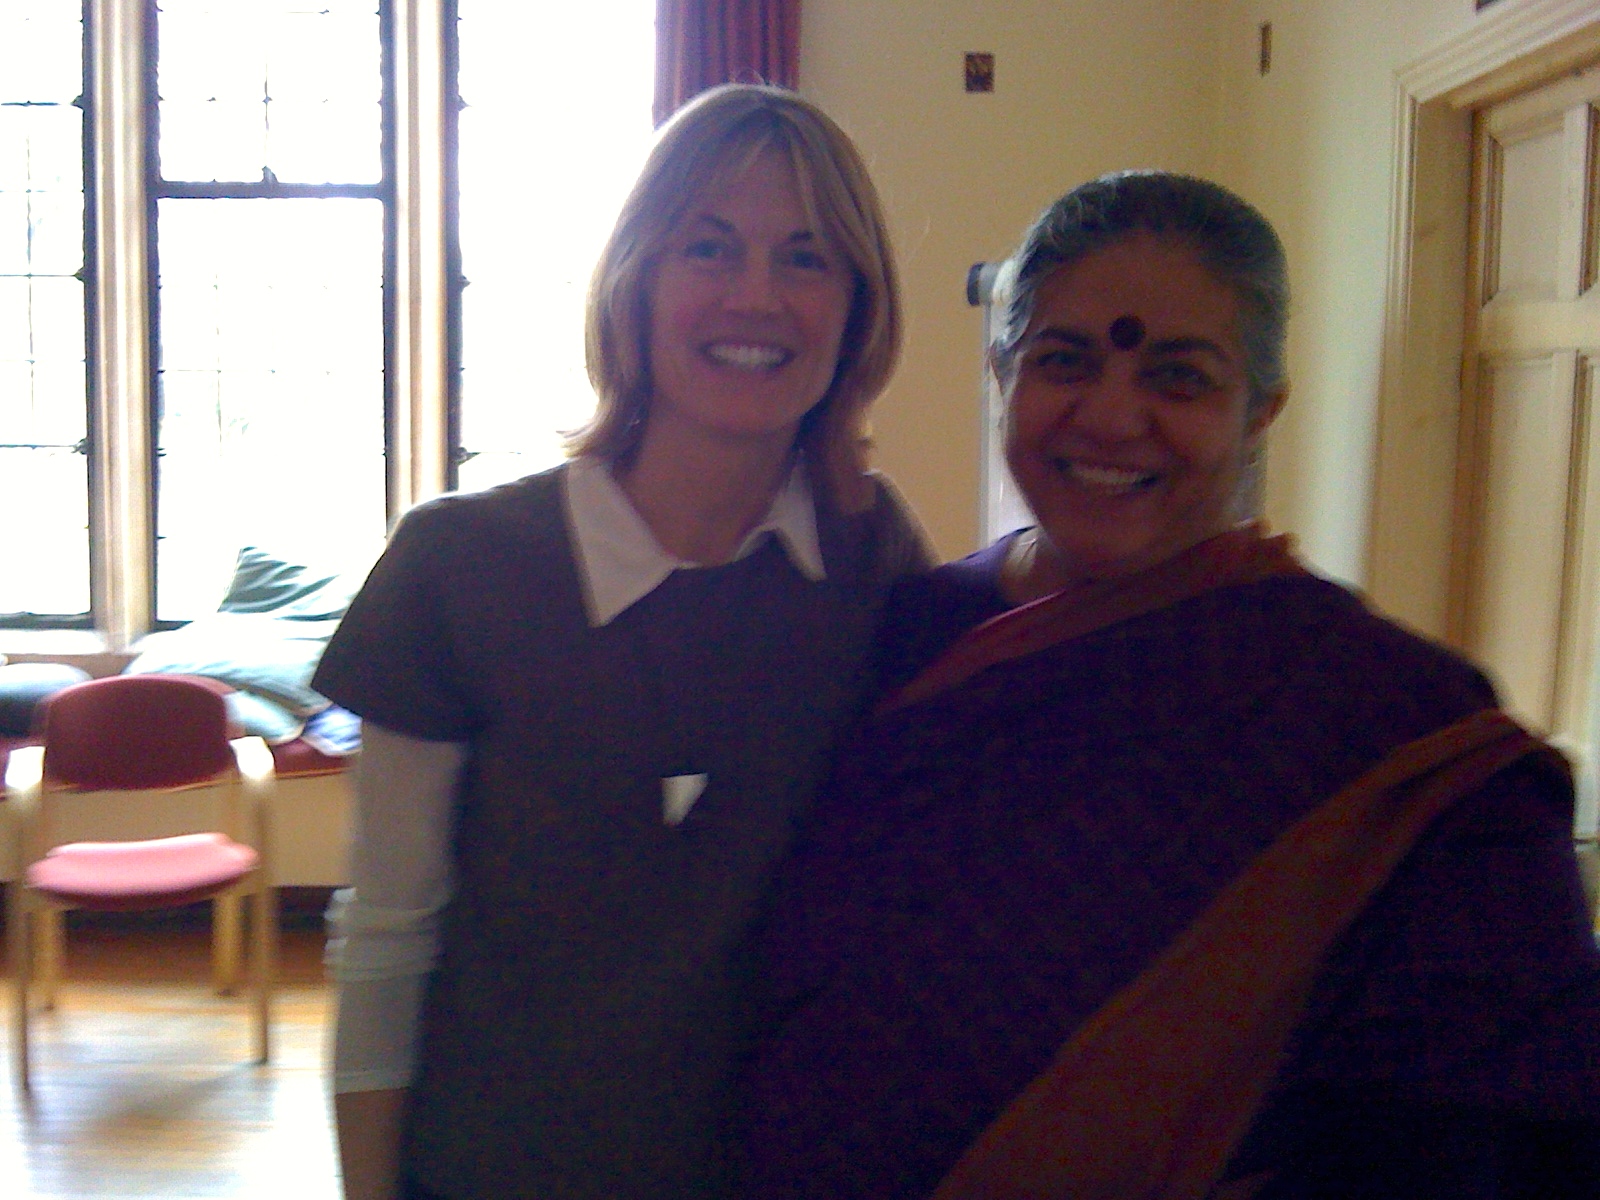 with Vandana Shiva